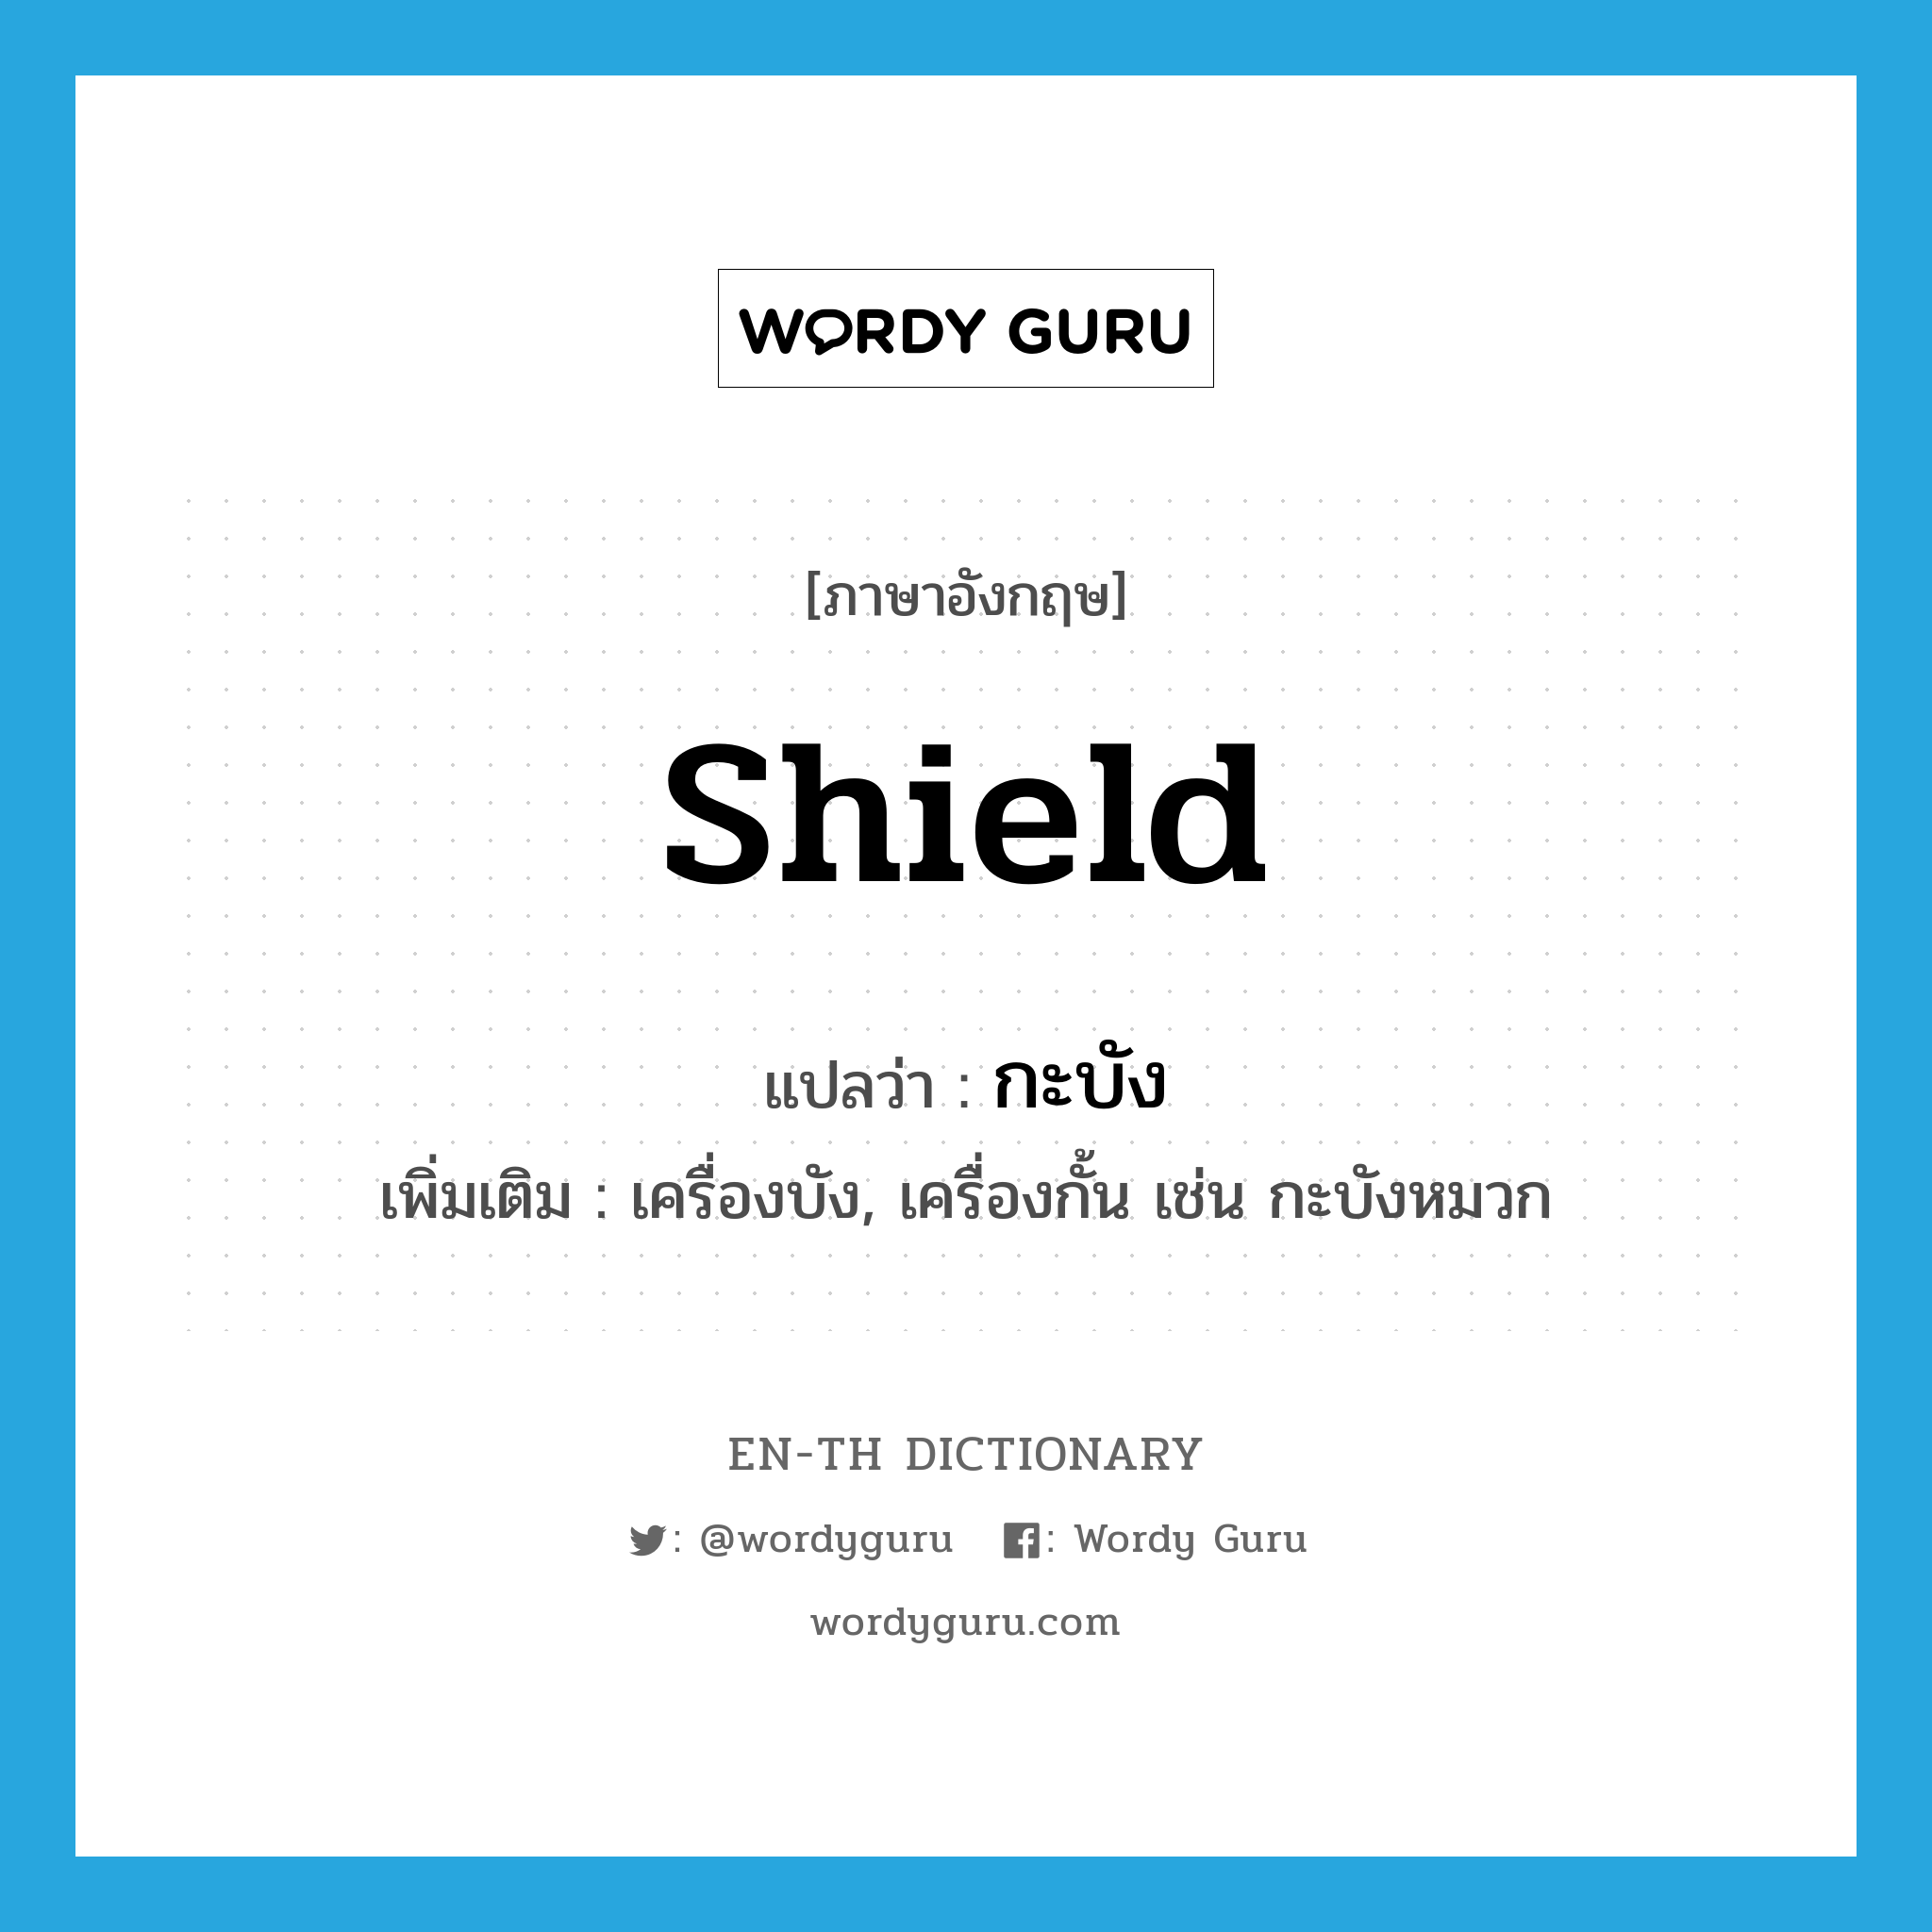 shield แปลว่า?, คำศัพท์ภาษาอังกฤษ shield แปลว่า กะบัง ประเภท N เพิ่มเติม เครื่องบัง, เครื่องกั้น เช่น กะบังหมวก หมวด N